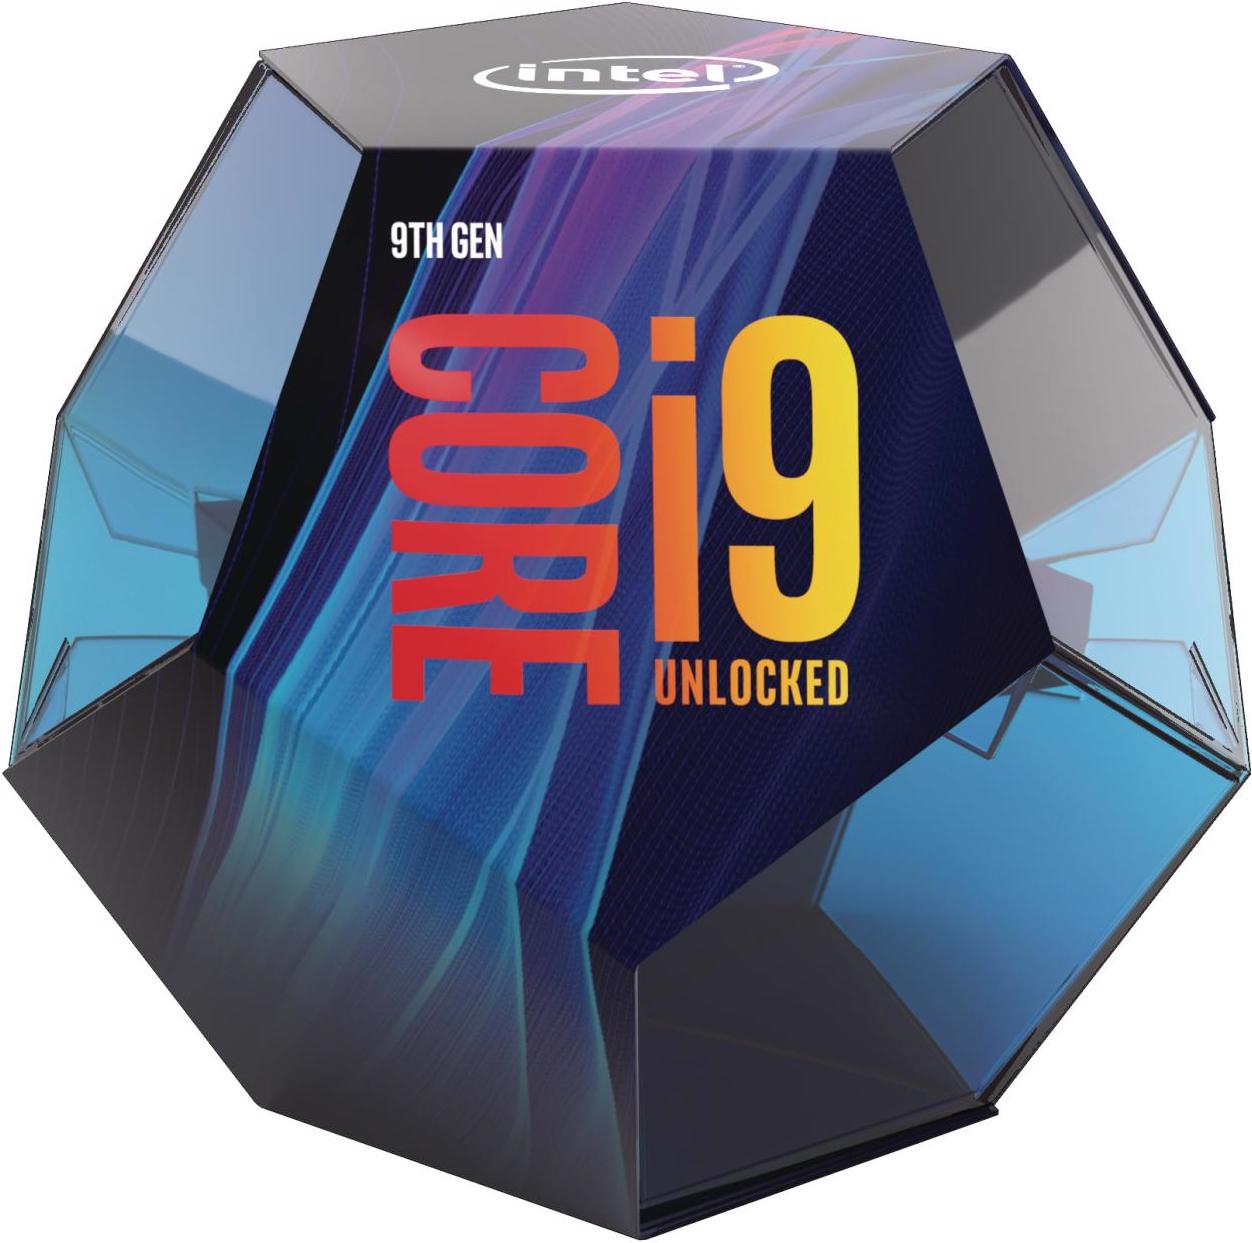 Intel Core i9-9900K (LGA 1151, 3.60 GHz, 8 -Core) - digitec